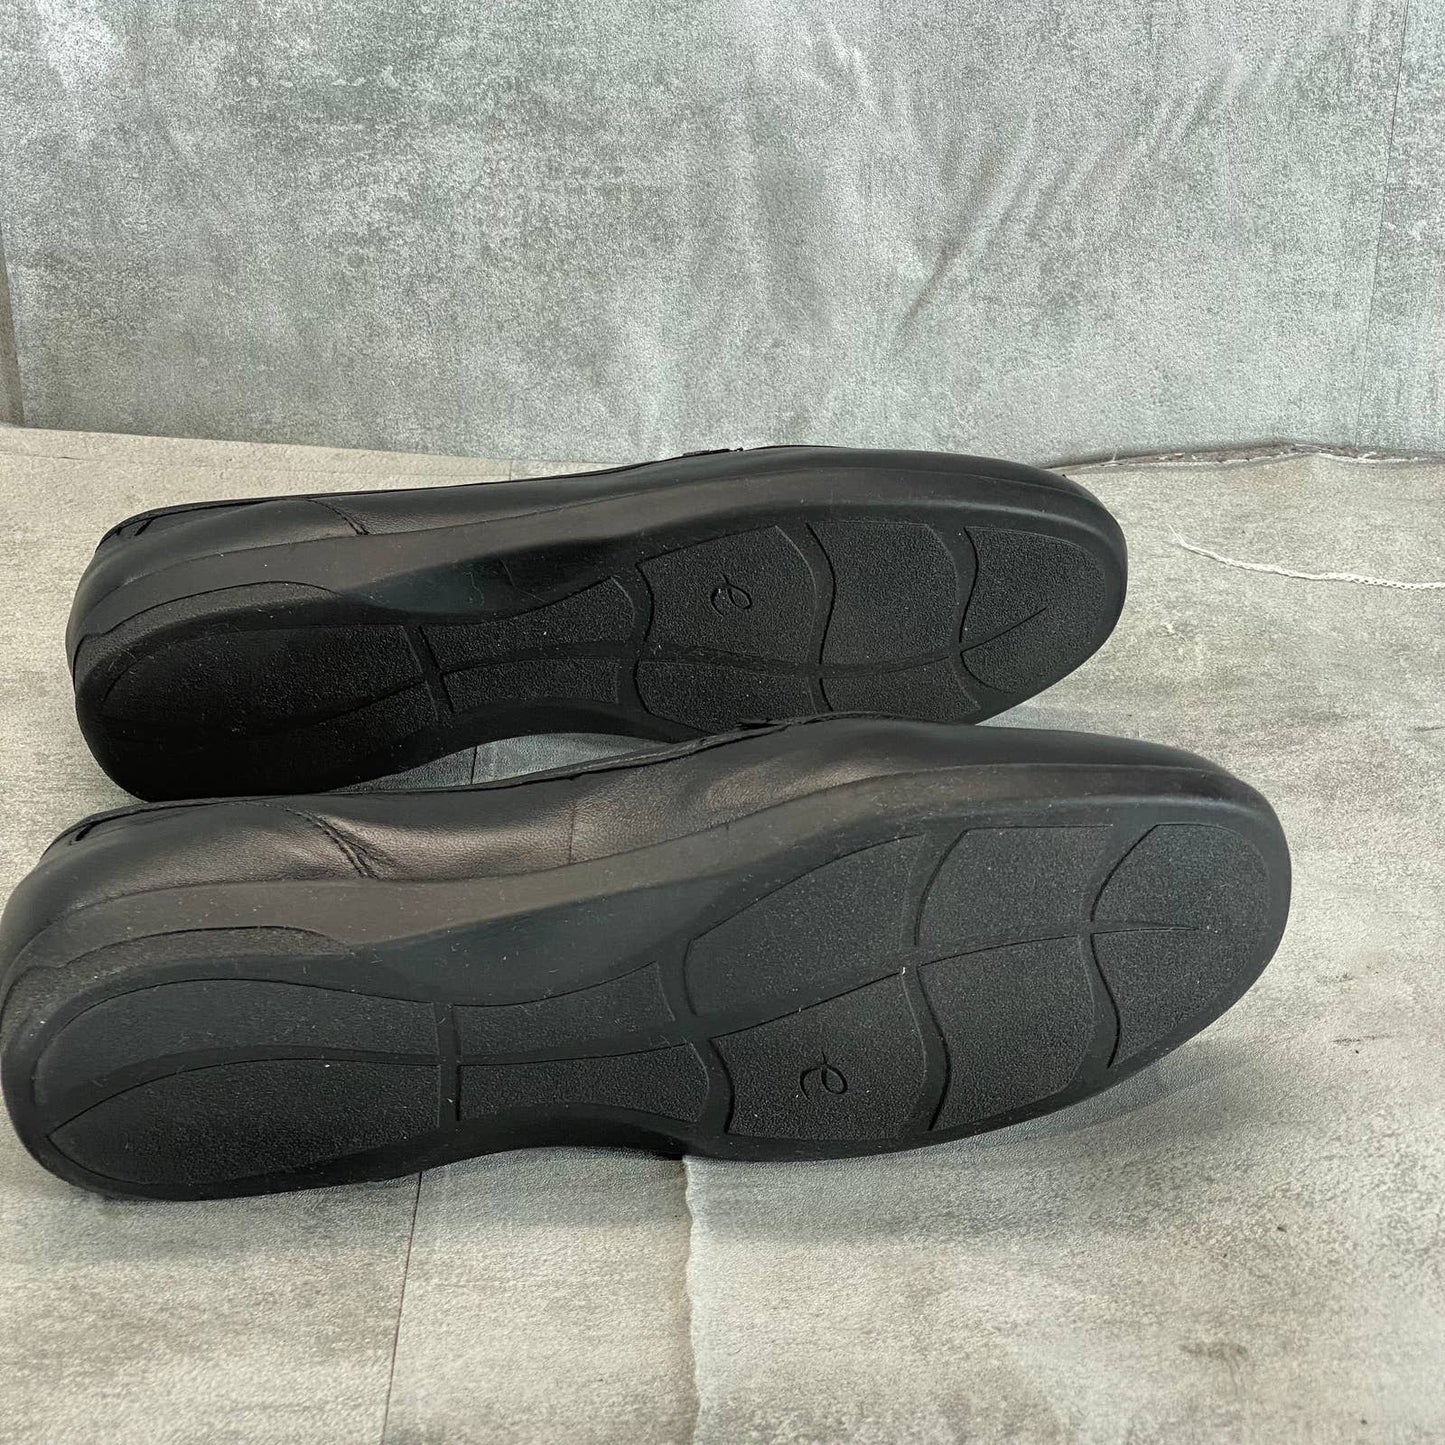 EASY SPIRIT Women's Black Leather Devitt Round-Toe Slip-On Loafer Flats SZ 8.5